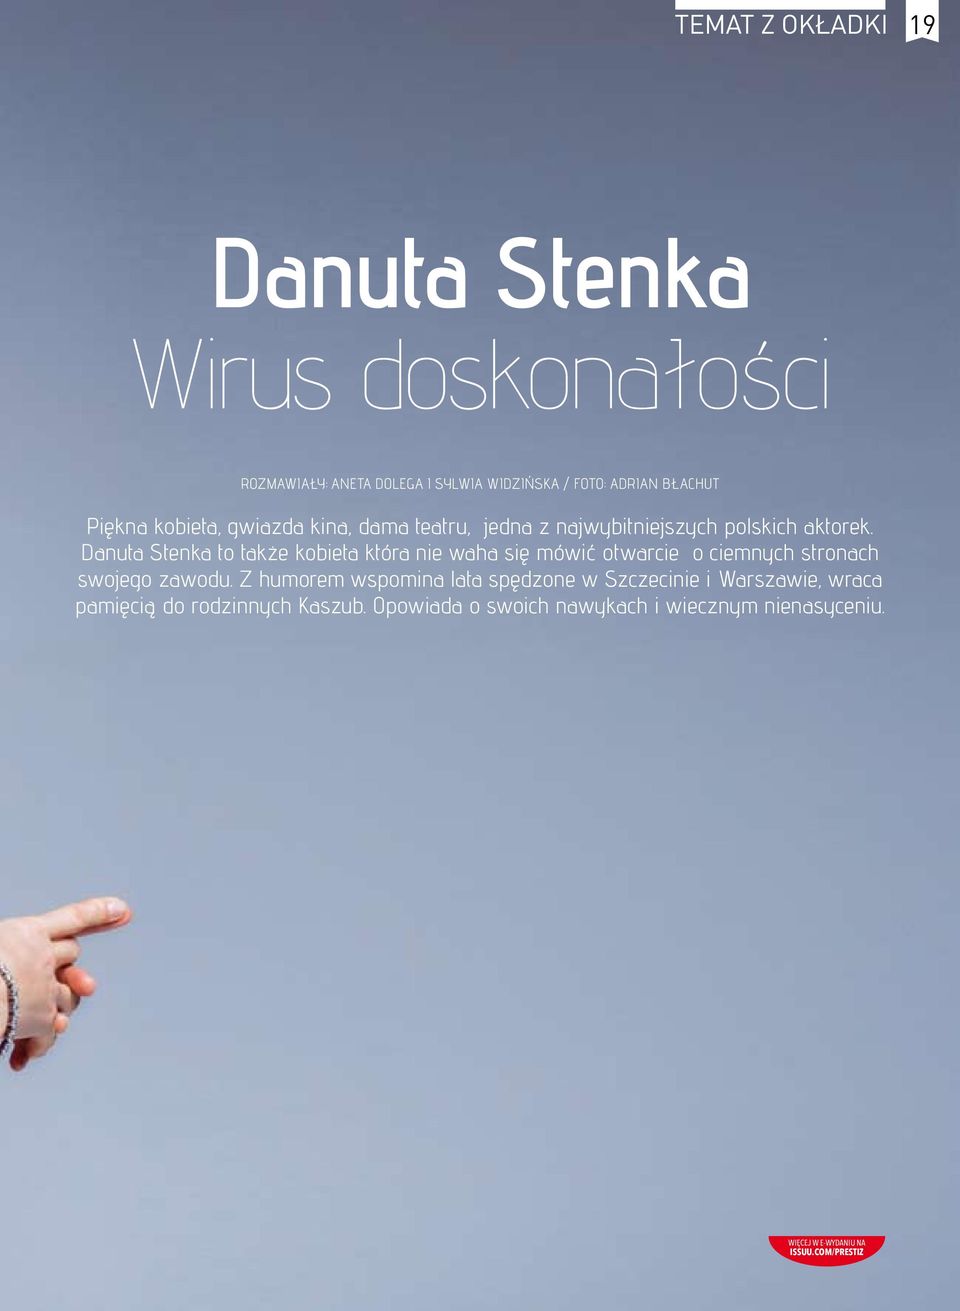 Danuta Stenka to także kobieta która nie waha się mówić otwarcie o ciemnych stronach swojego zawodu.